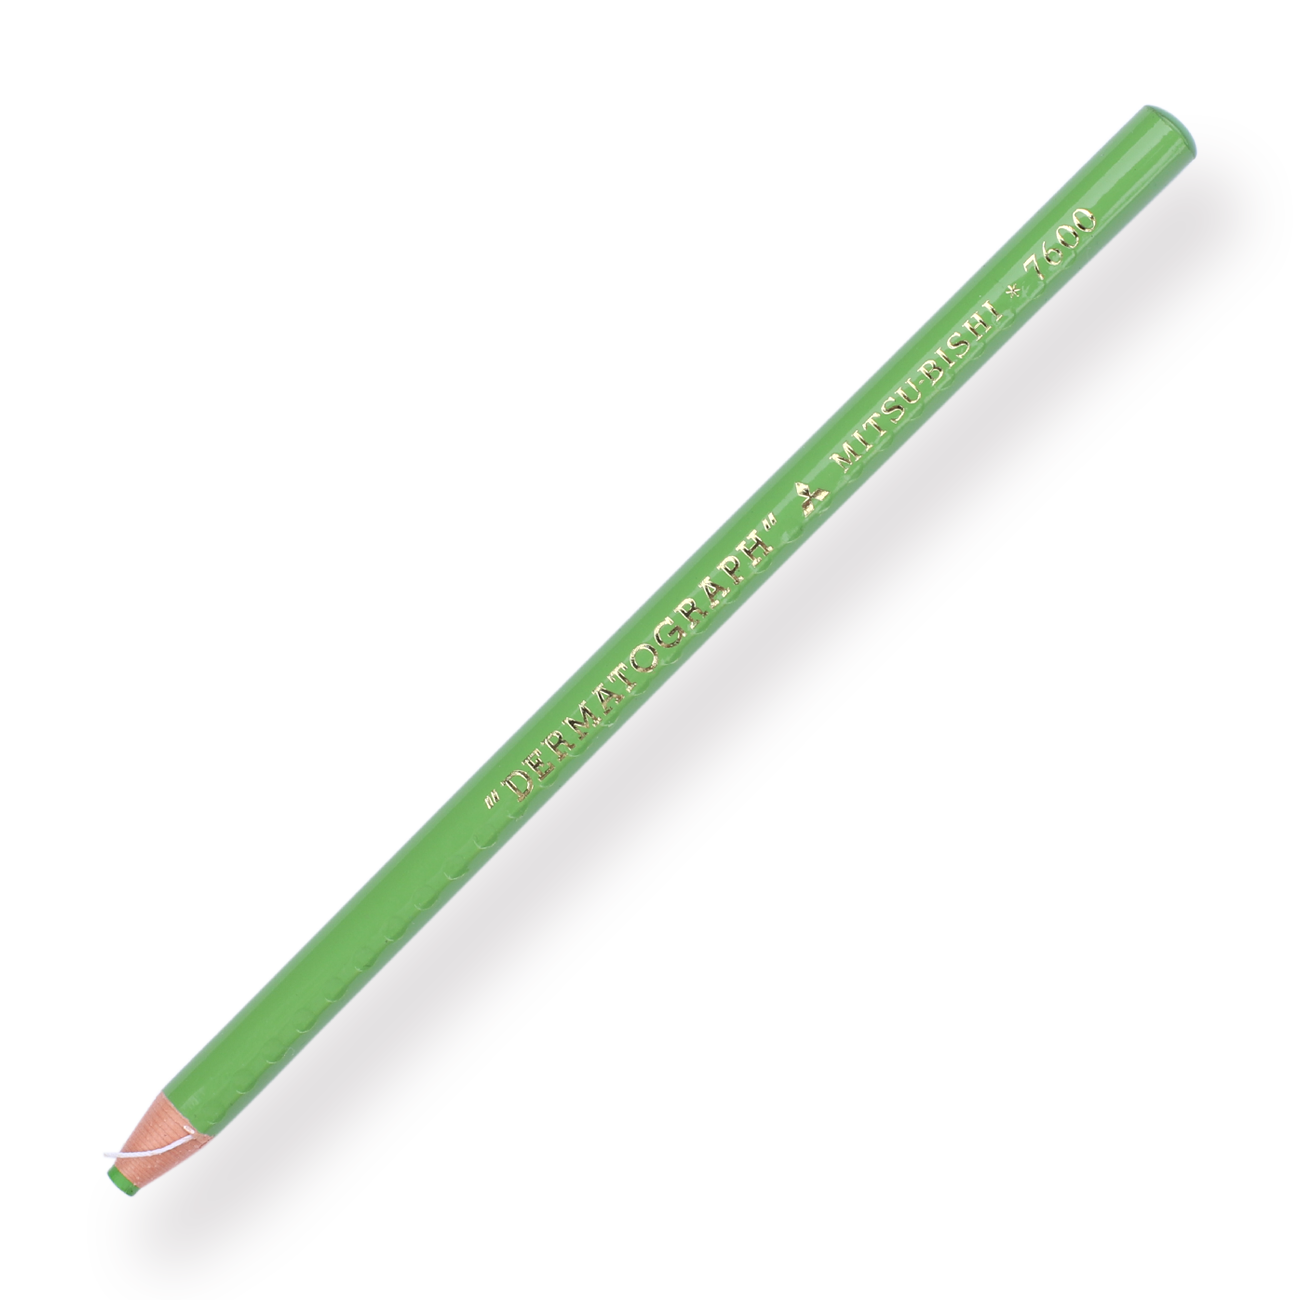 Uni-ball Dermatograph 7600 Colored Pencil - Light Green